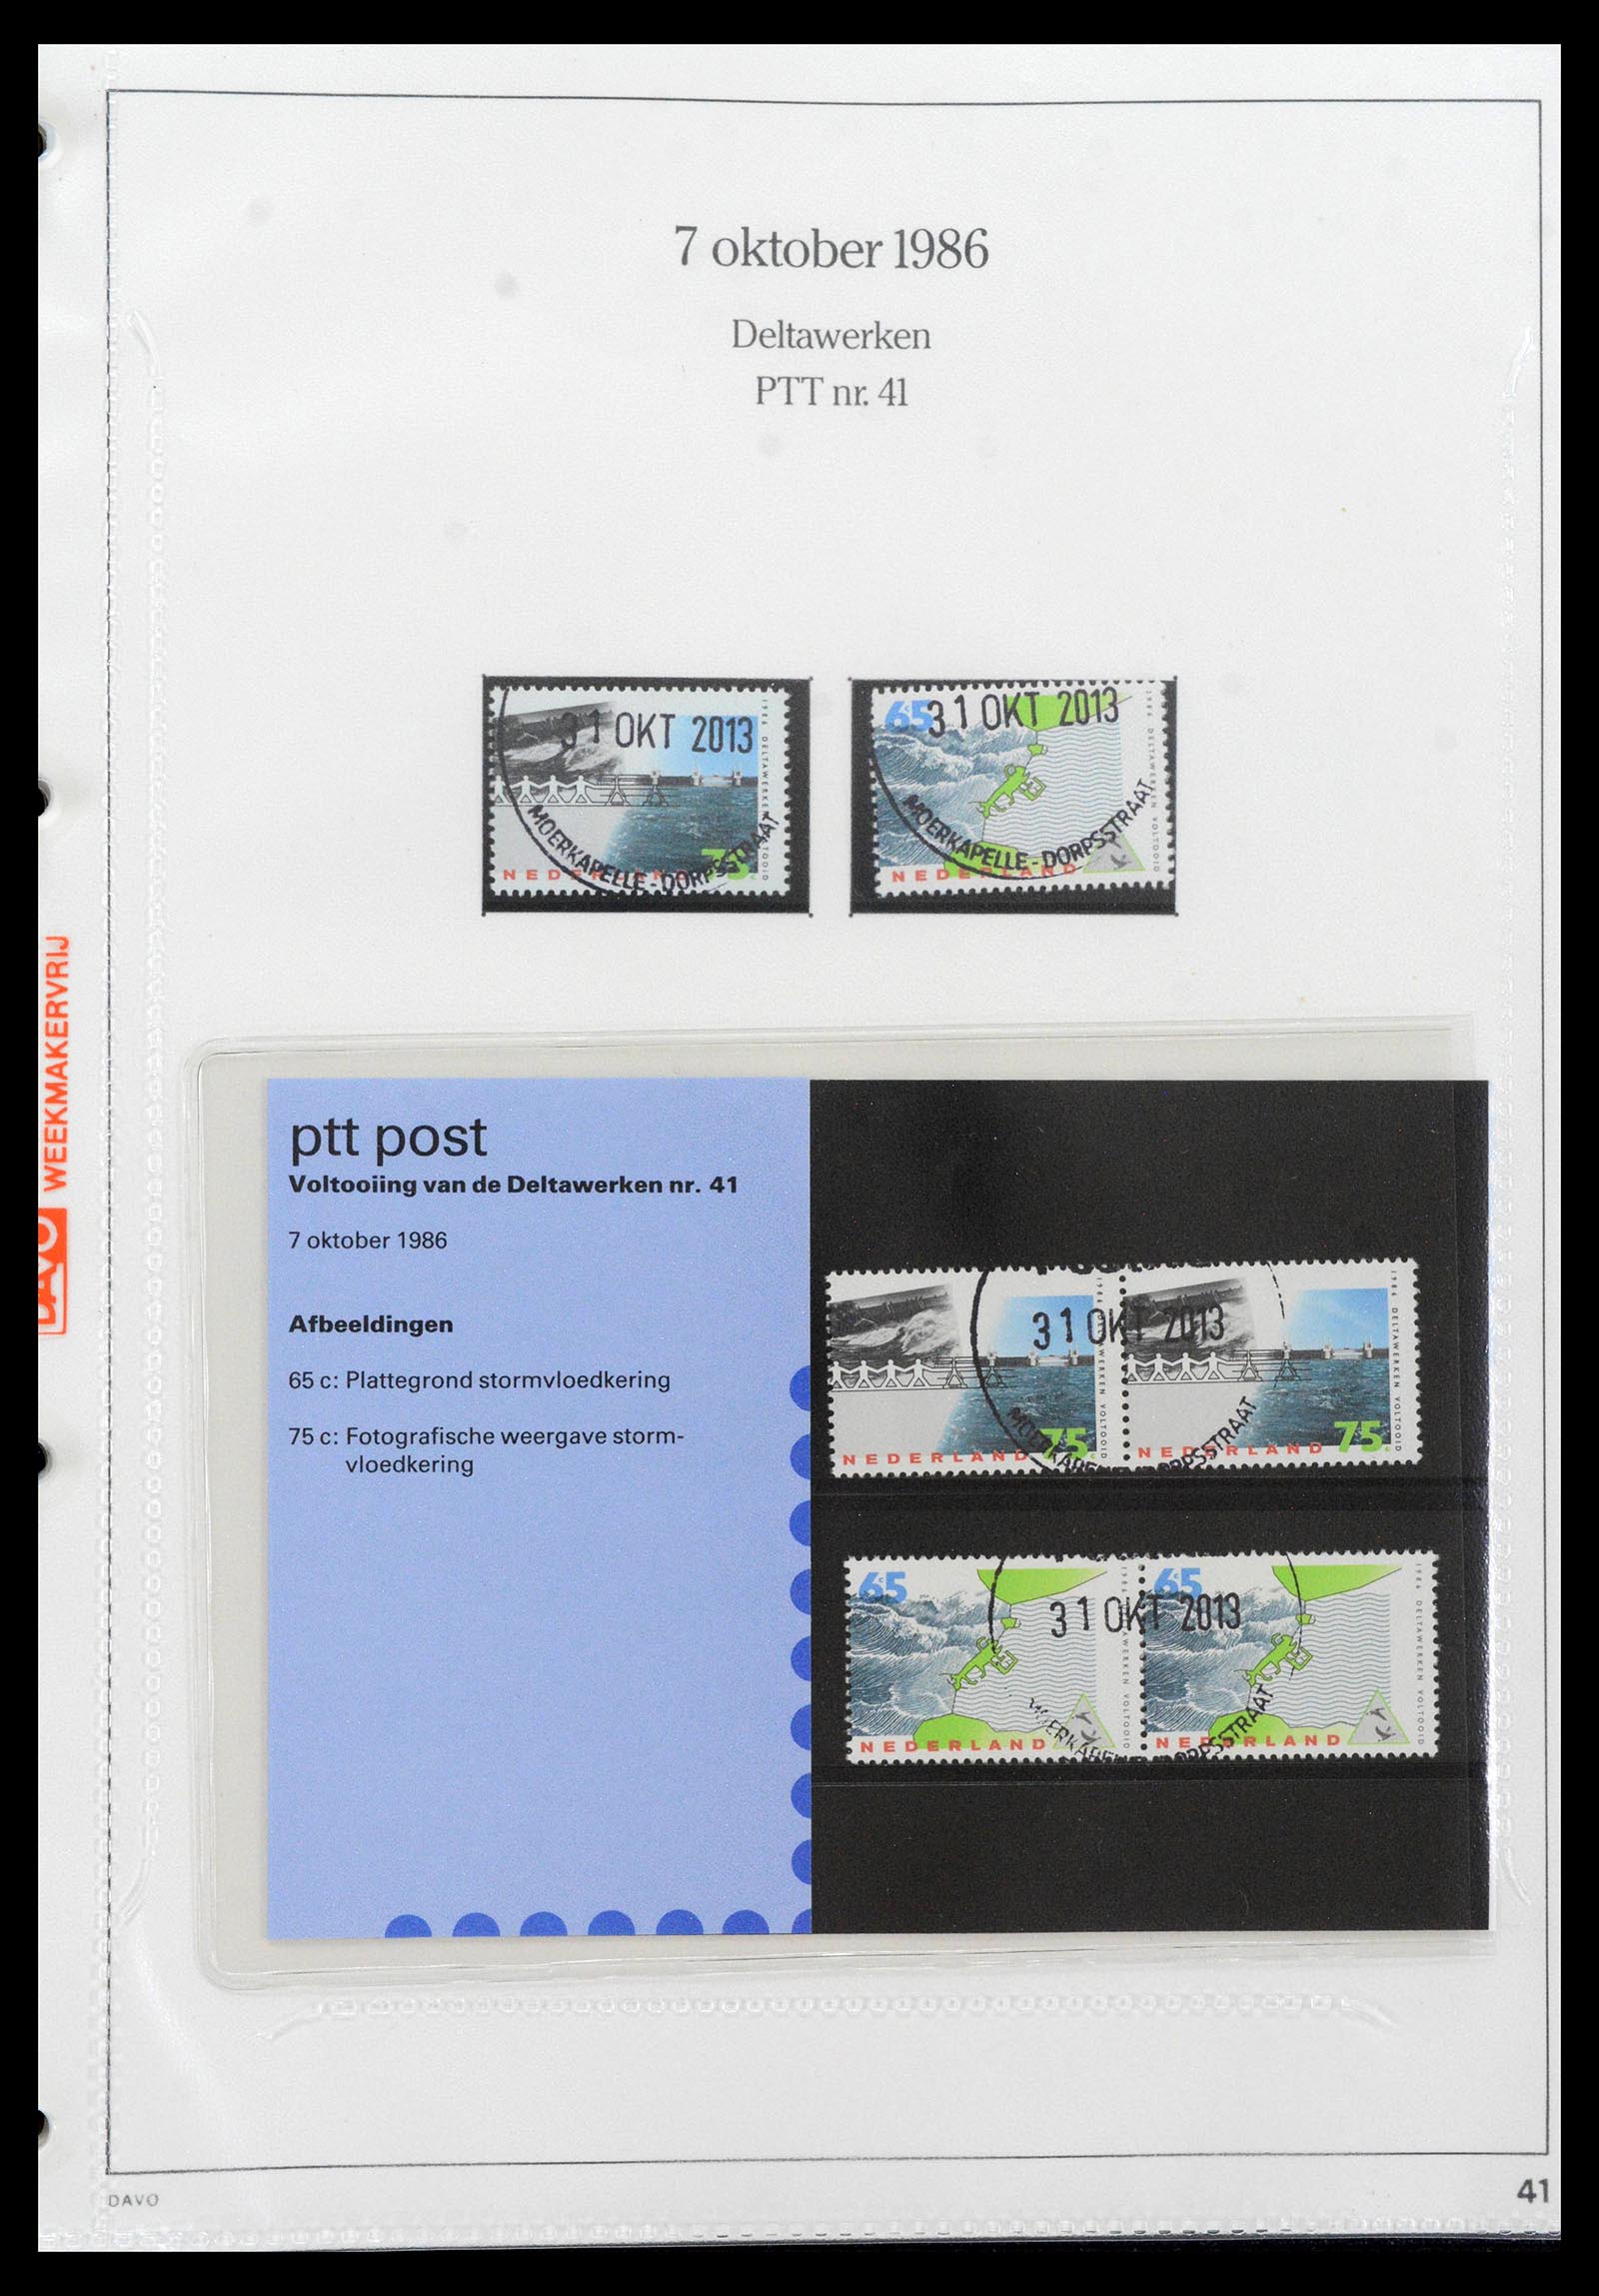 39121 0041 - Stamp collection 39121 Netherlands presentationpacks 1982-2001.